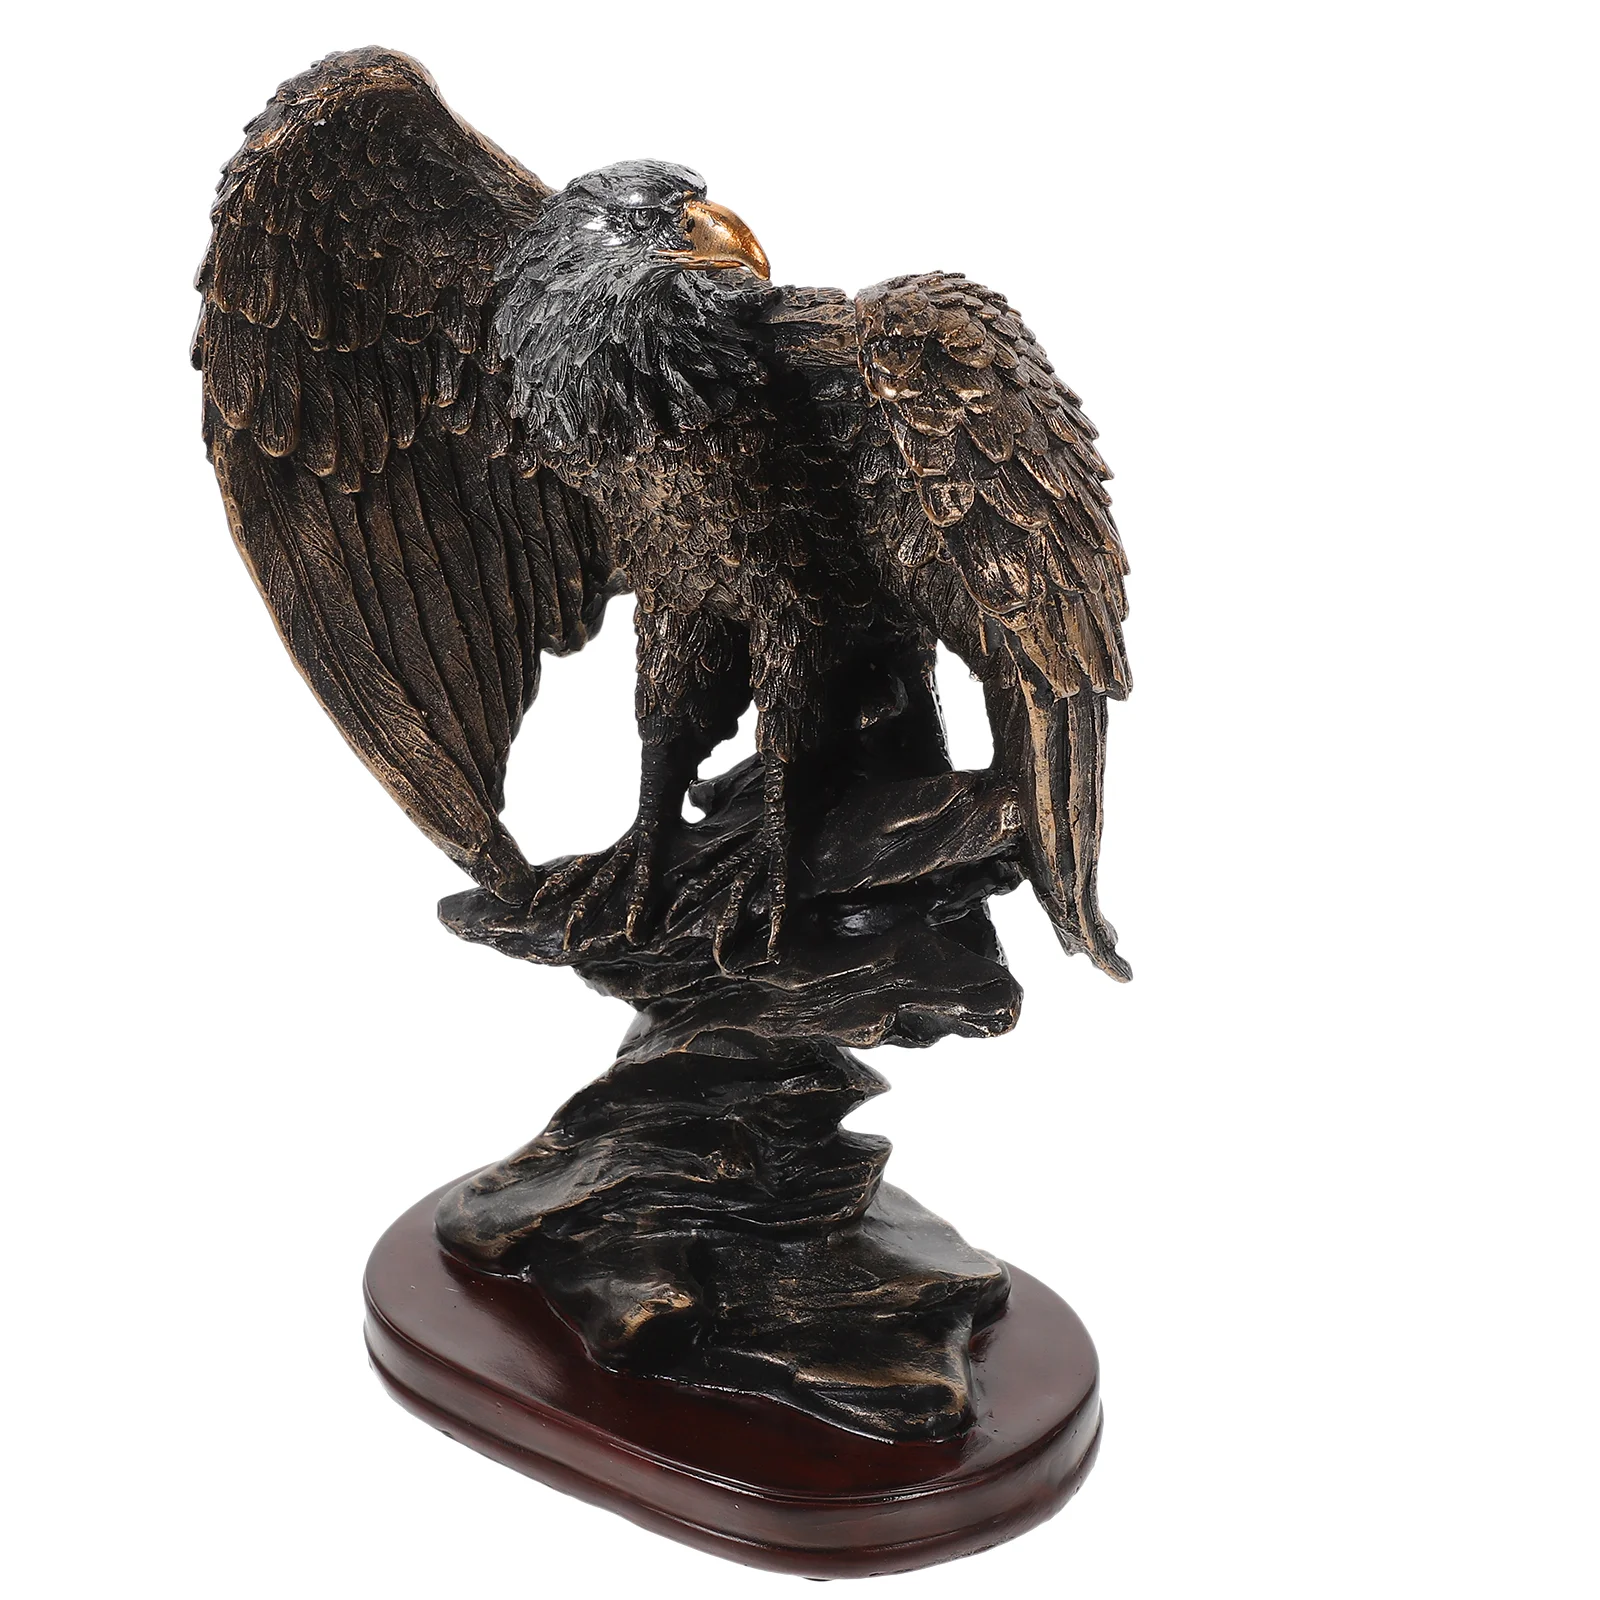 

Статуя Орла из смолы, статуэтка птицы, офисный стол, статуя орла, домашнее настольное украшение